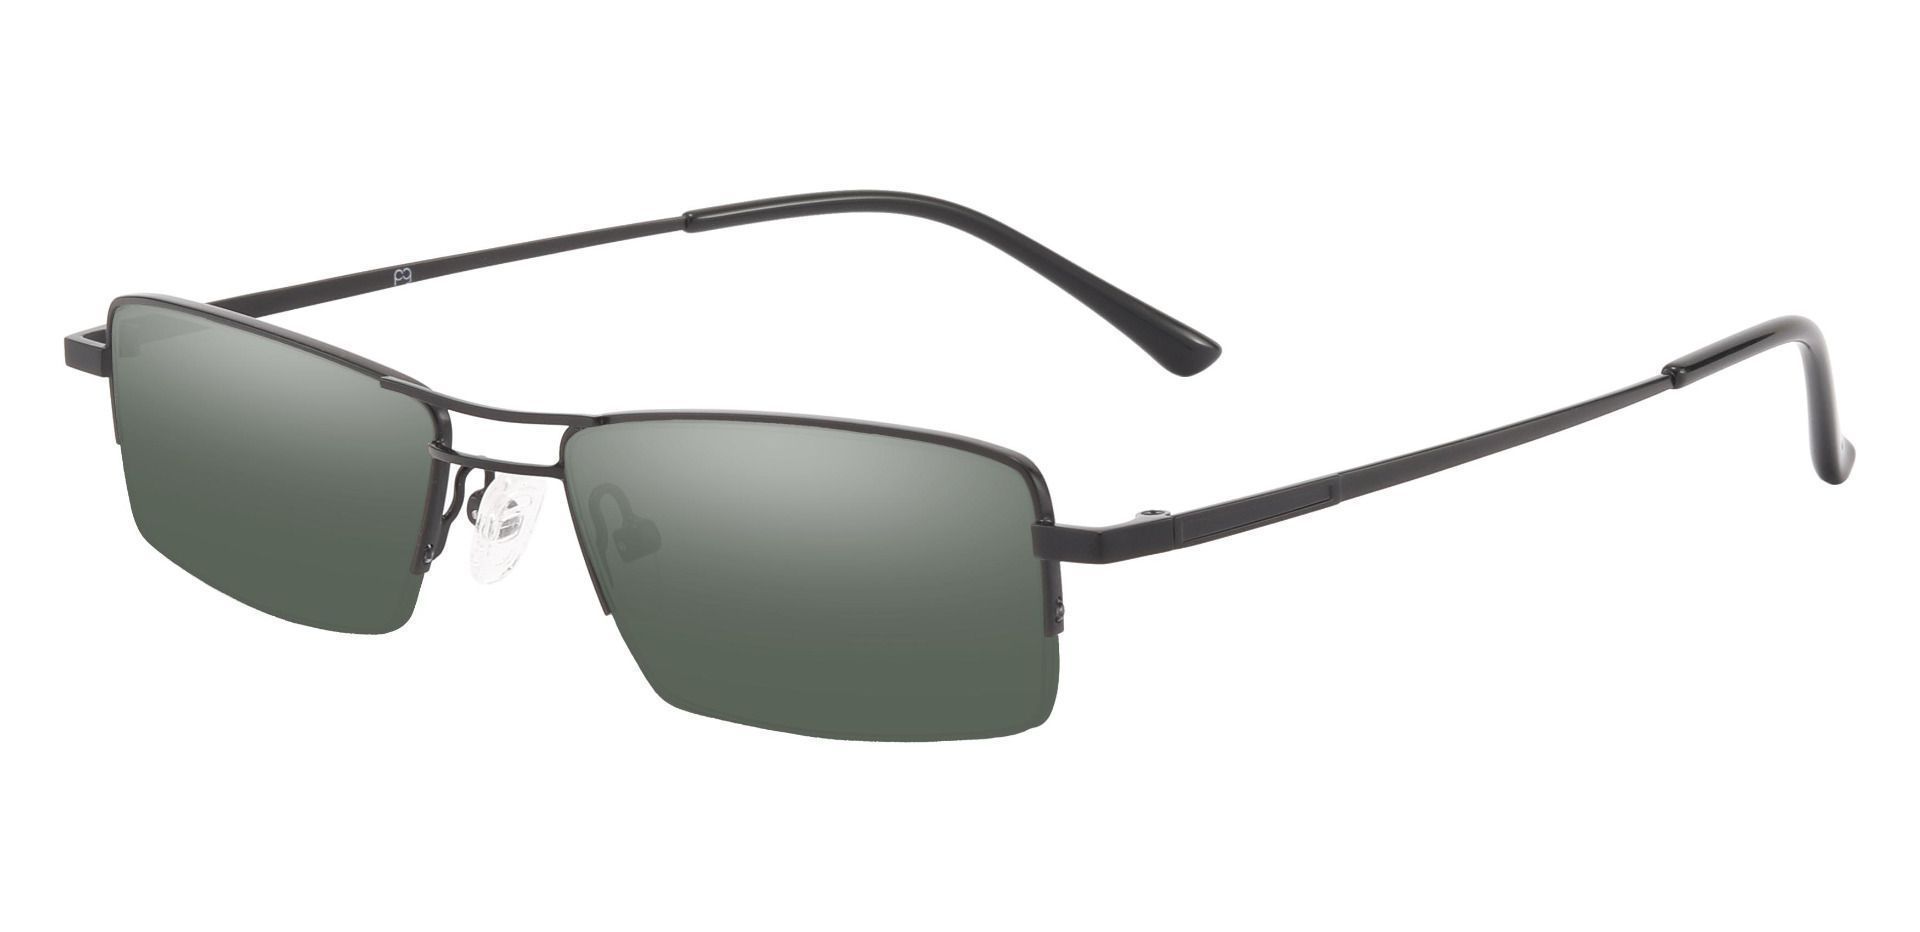 Gilbert Aviator Single Vision Sunglasses - Black Frame With Green Lenses